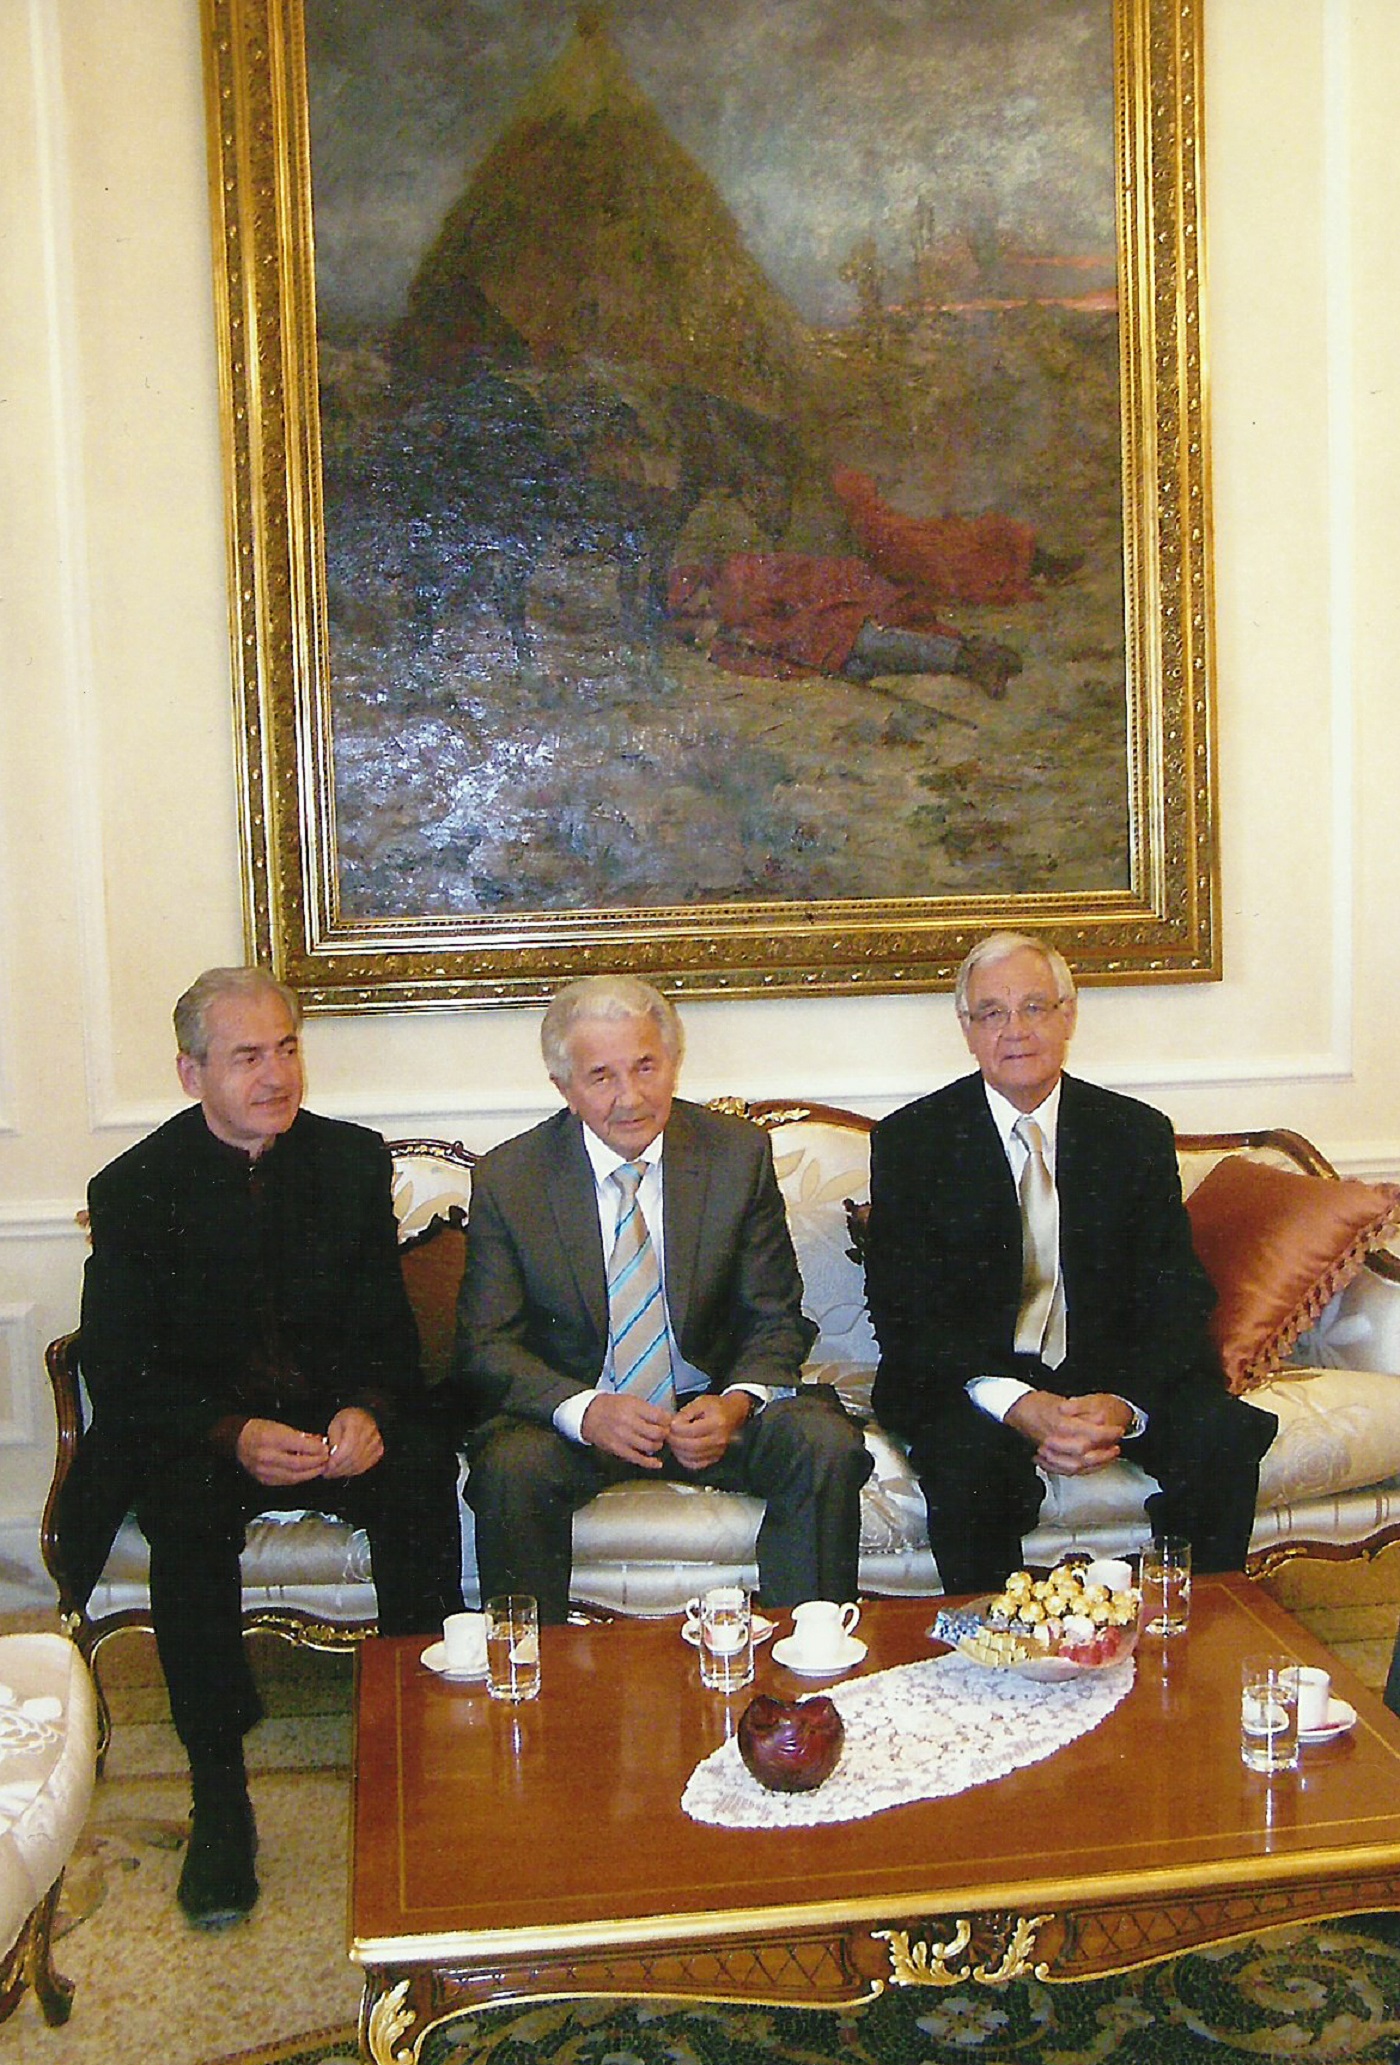 M. Ramušćak, D. Drk, M. Lacković